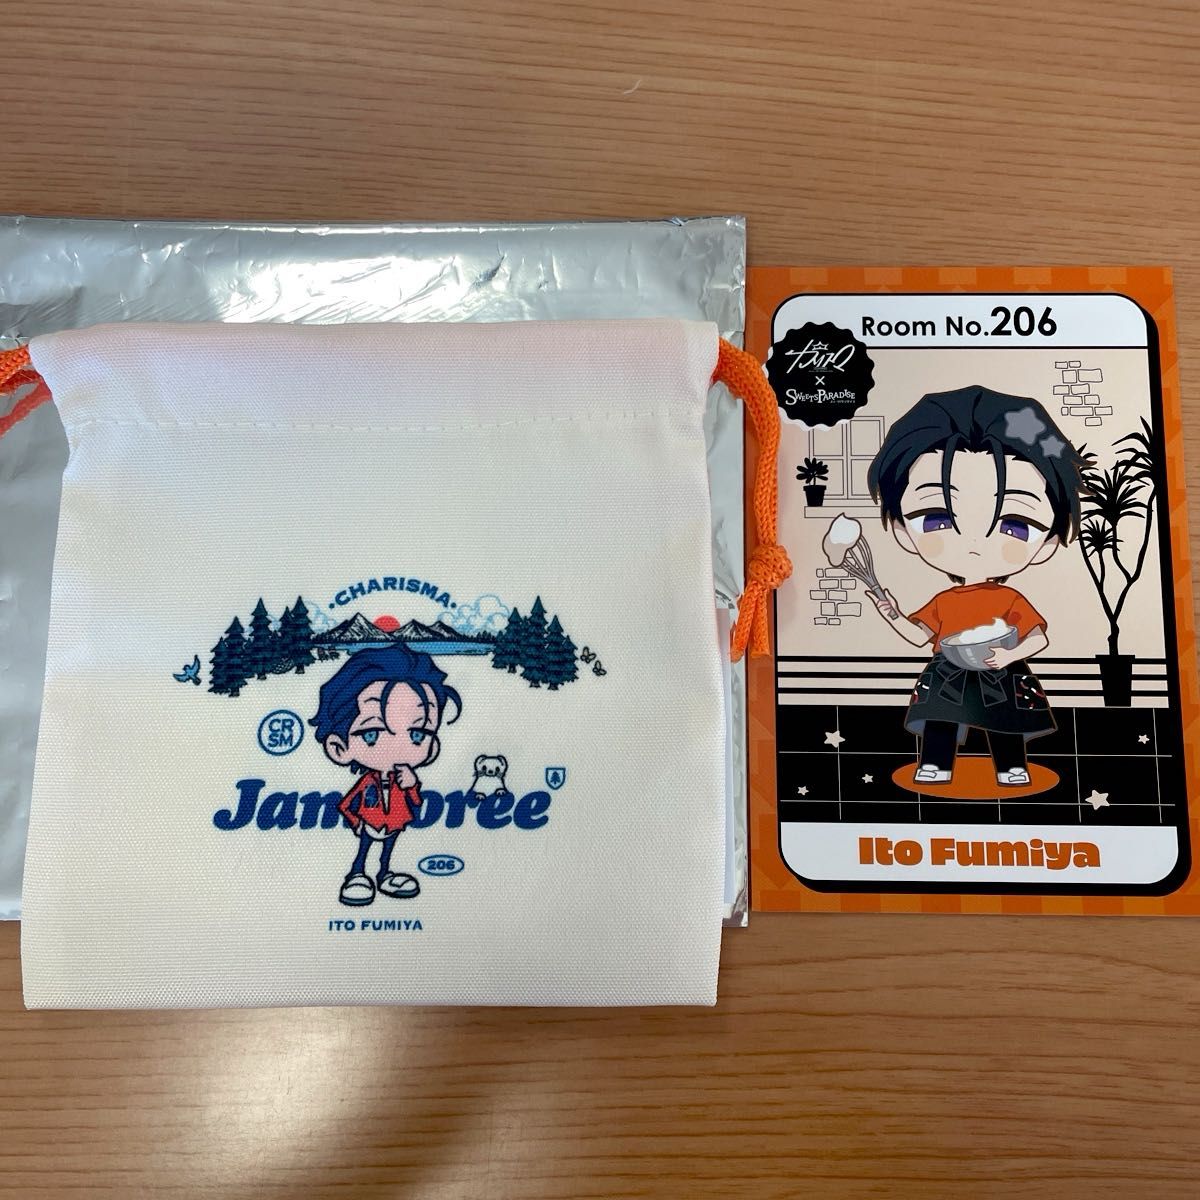 カリスマ 伊藤ふみや ジャンボリー 巾着 ポップアップ スイパラ ポストカード